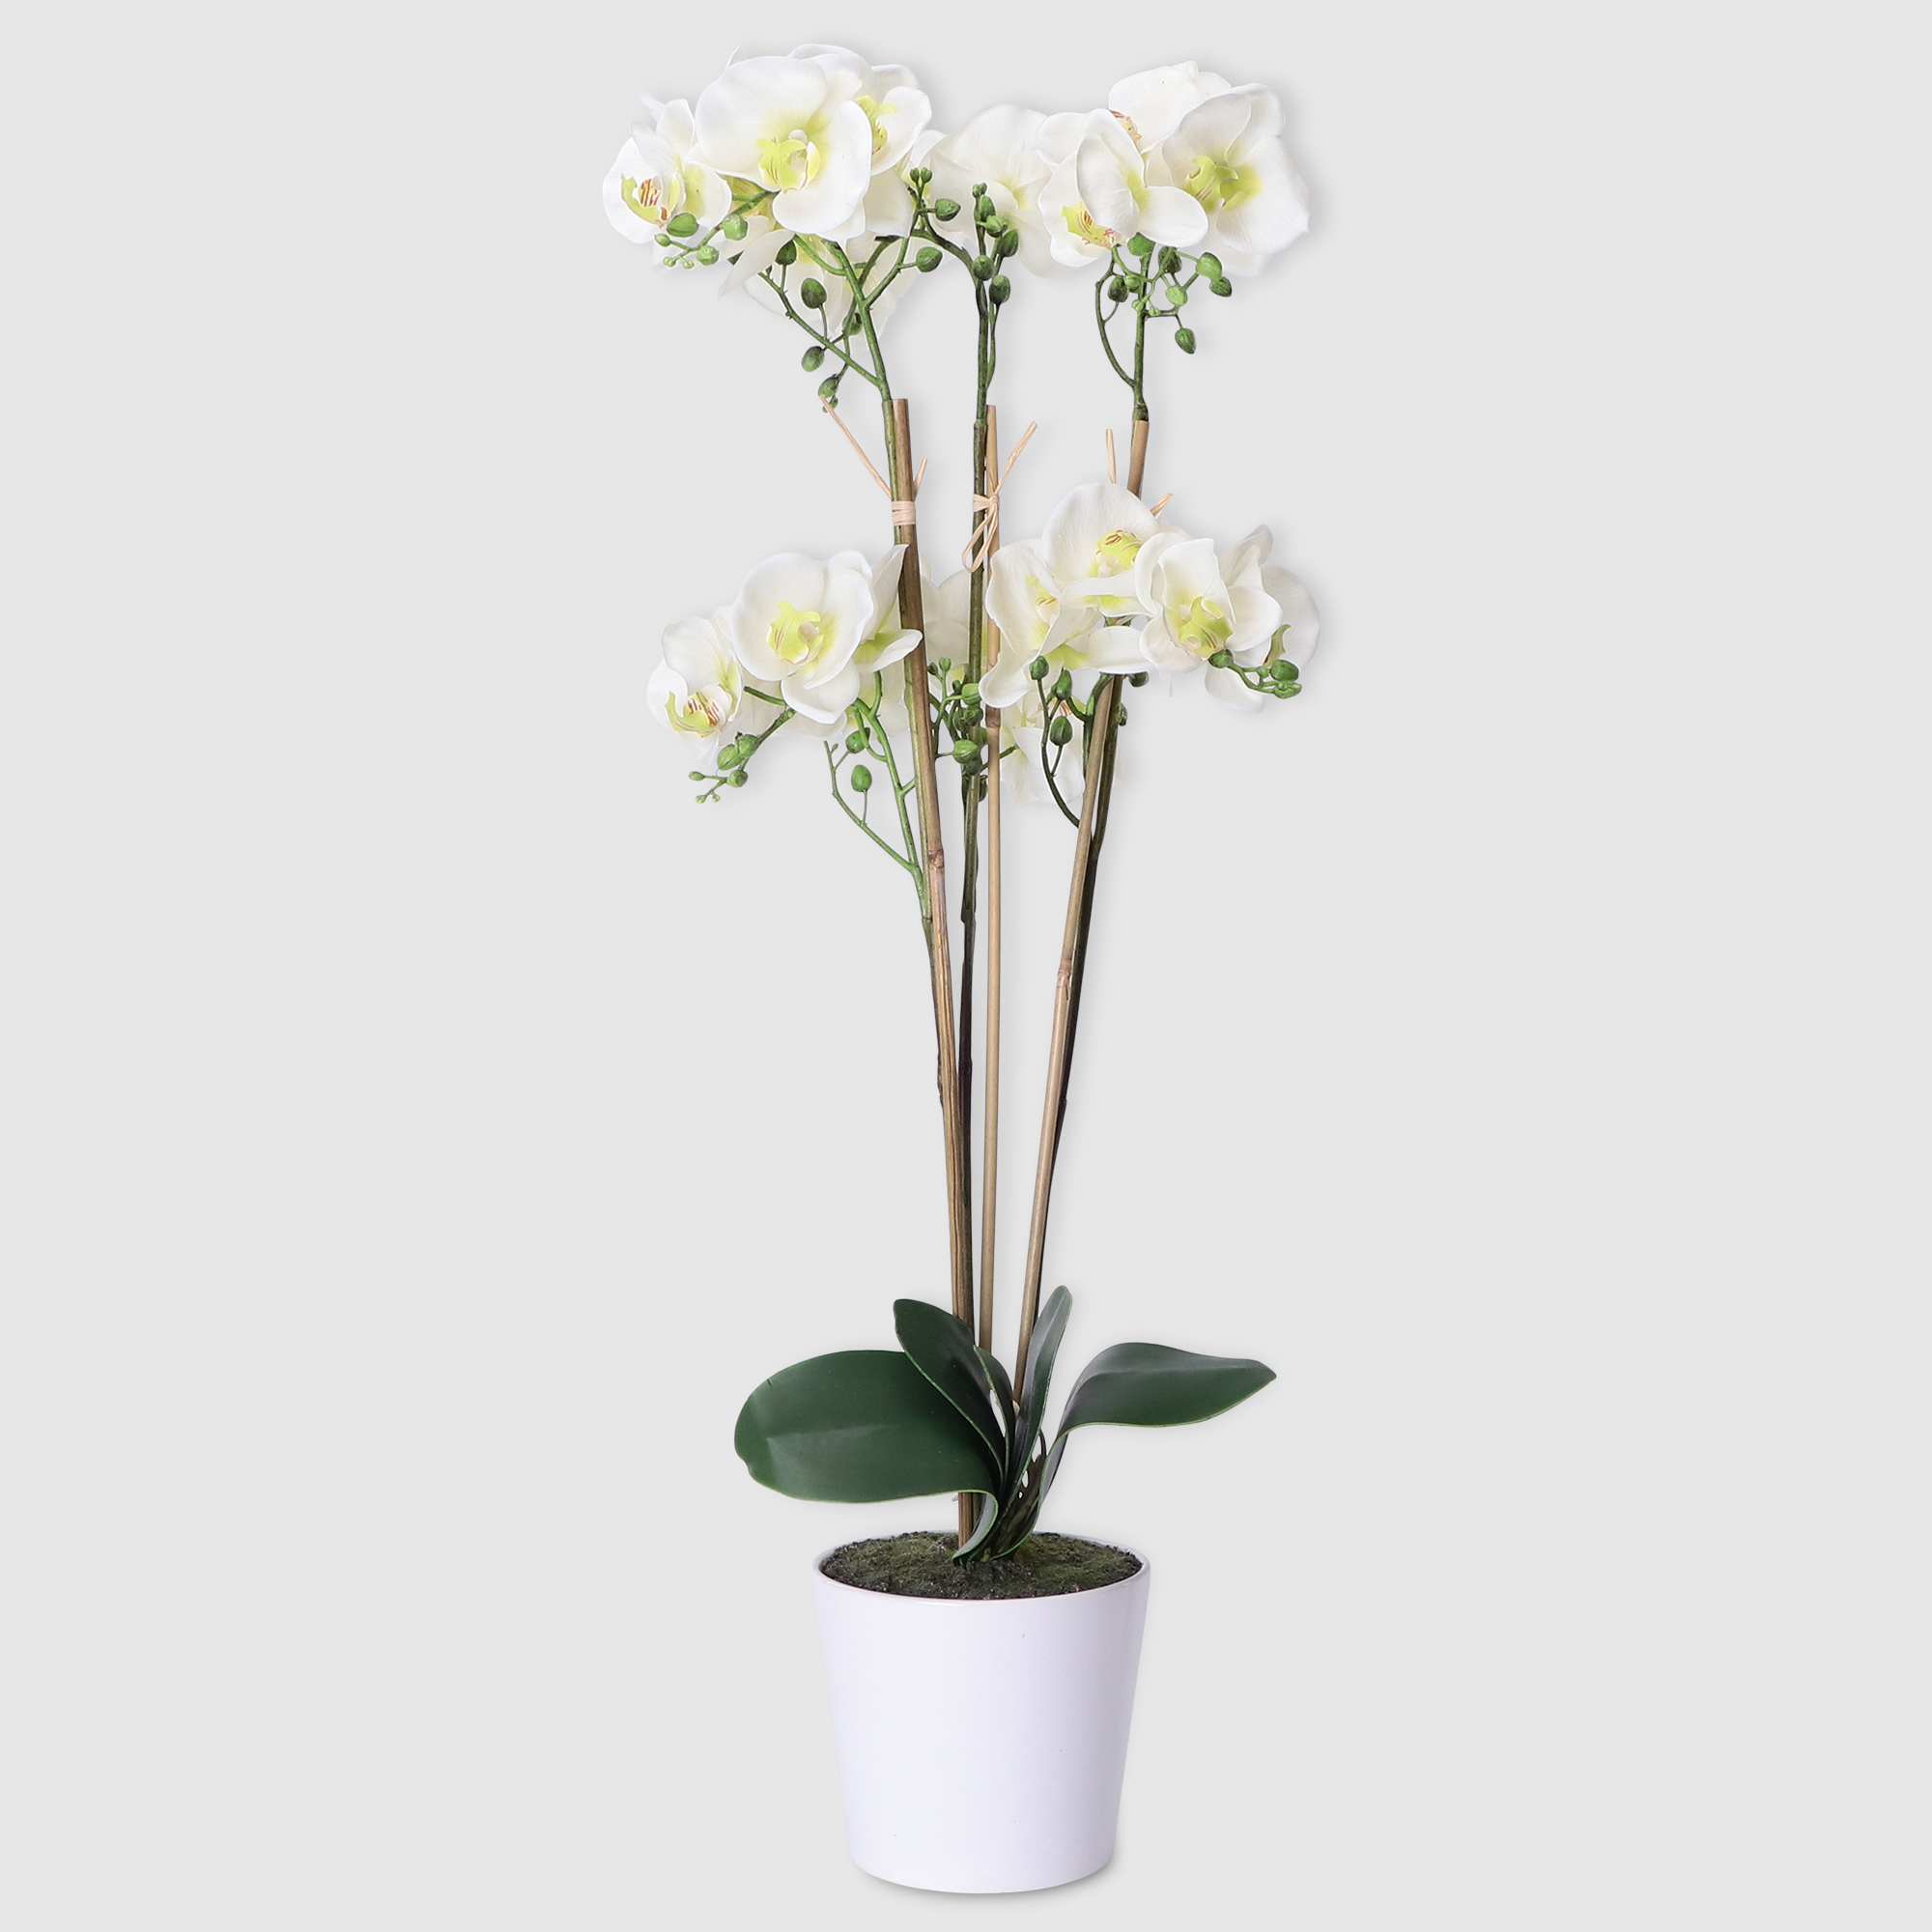 Цветок Colorful искусственный в горшке орхидея белый 85 см